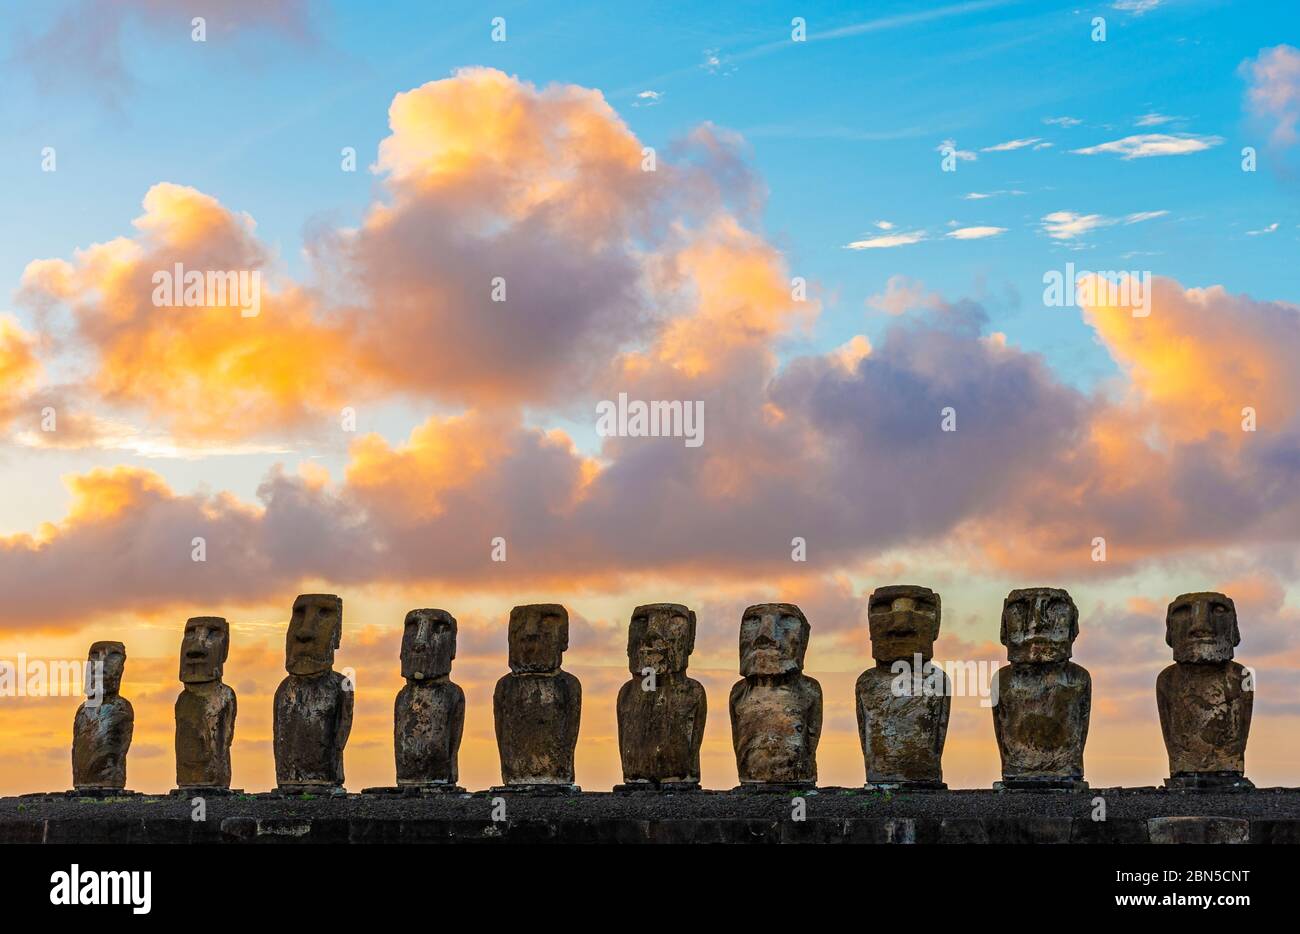 The Moai statues of Ahu Tongariki at Sunrise, Easter Island (Rapa Nui), Chile. Stock Photo